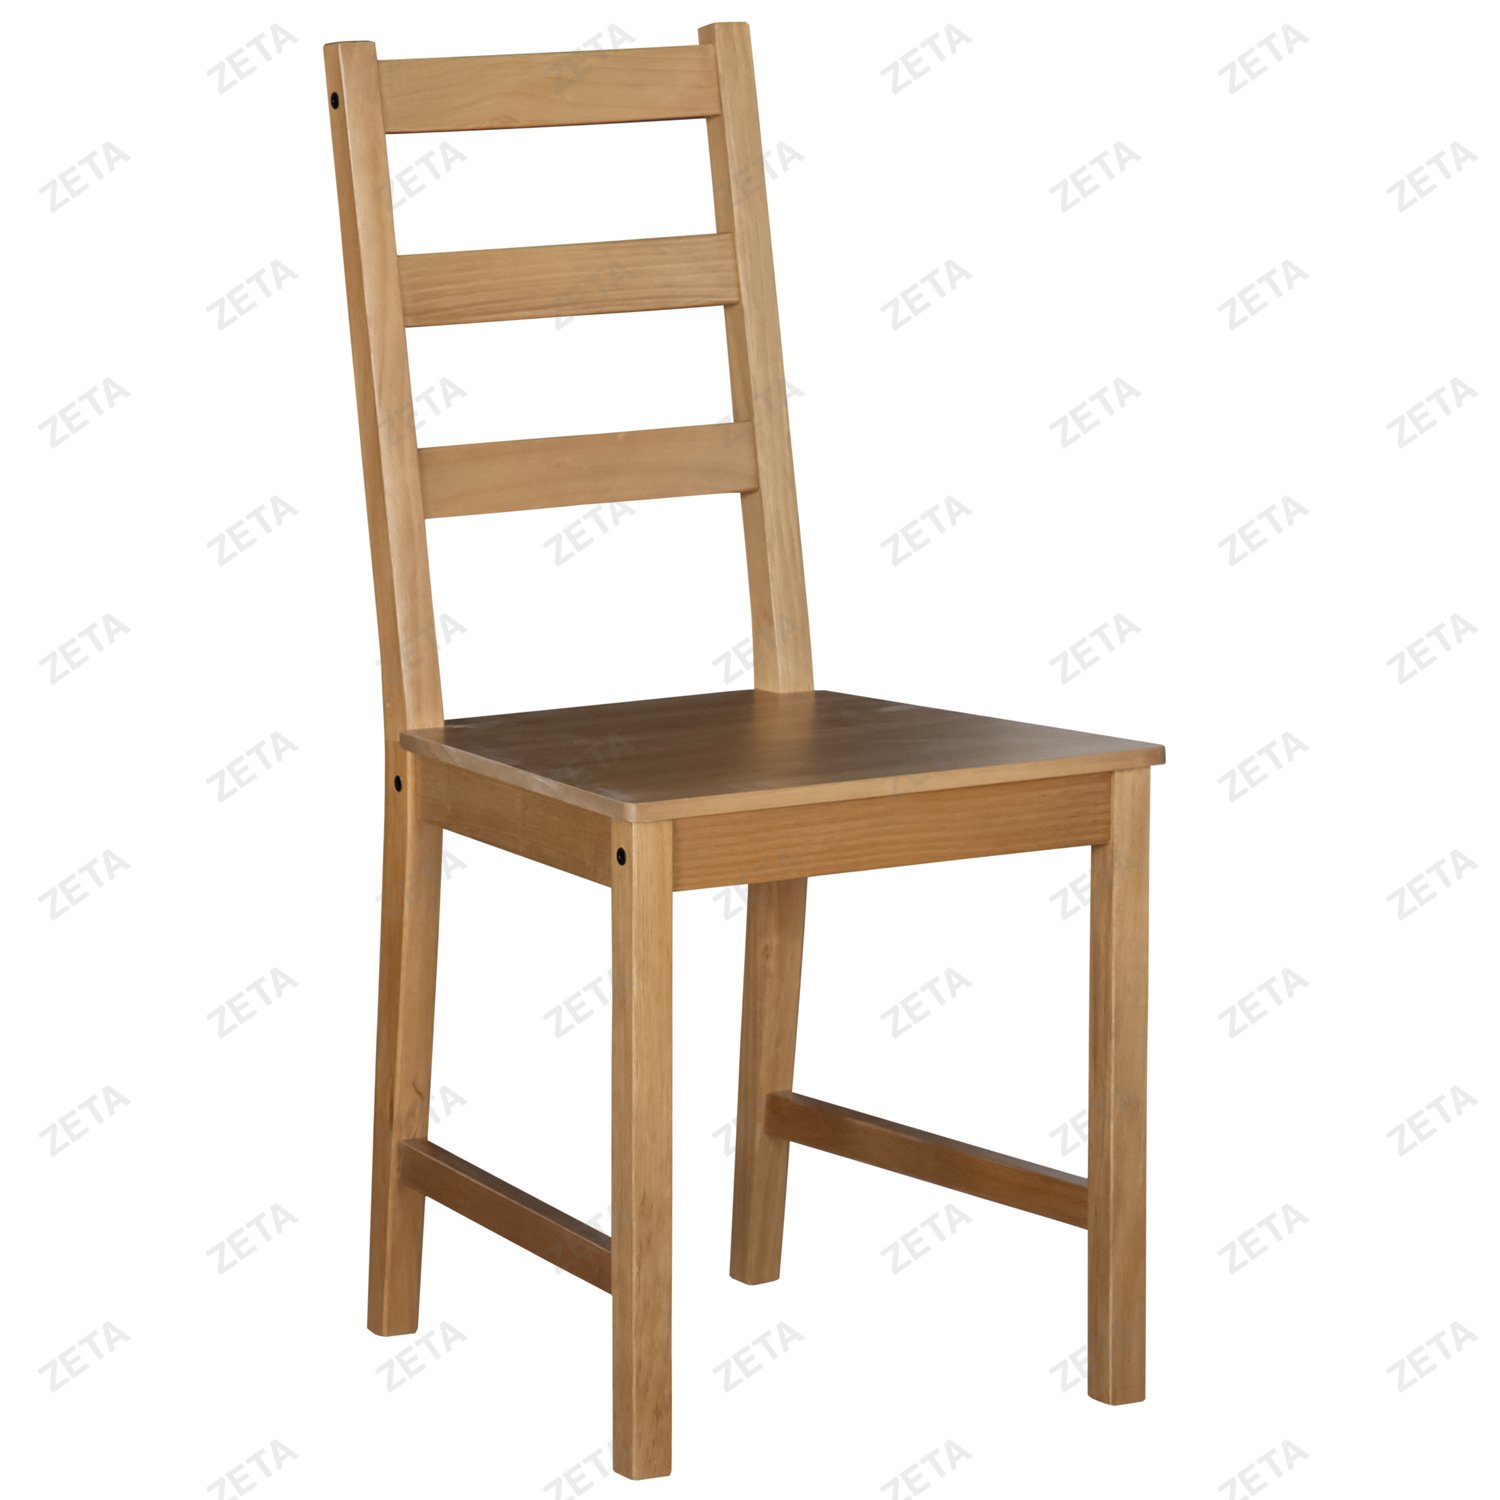 Стул "Ladder Back" (натуральный) от производителей IKEA (ВИ) - изображение 1